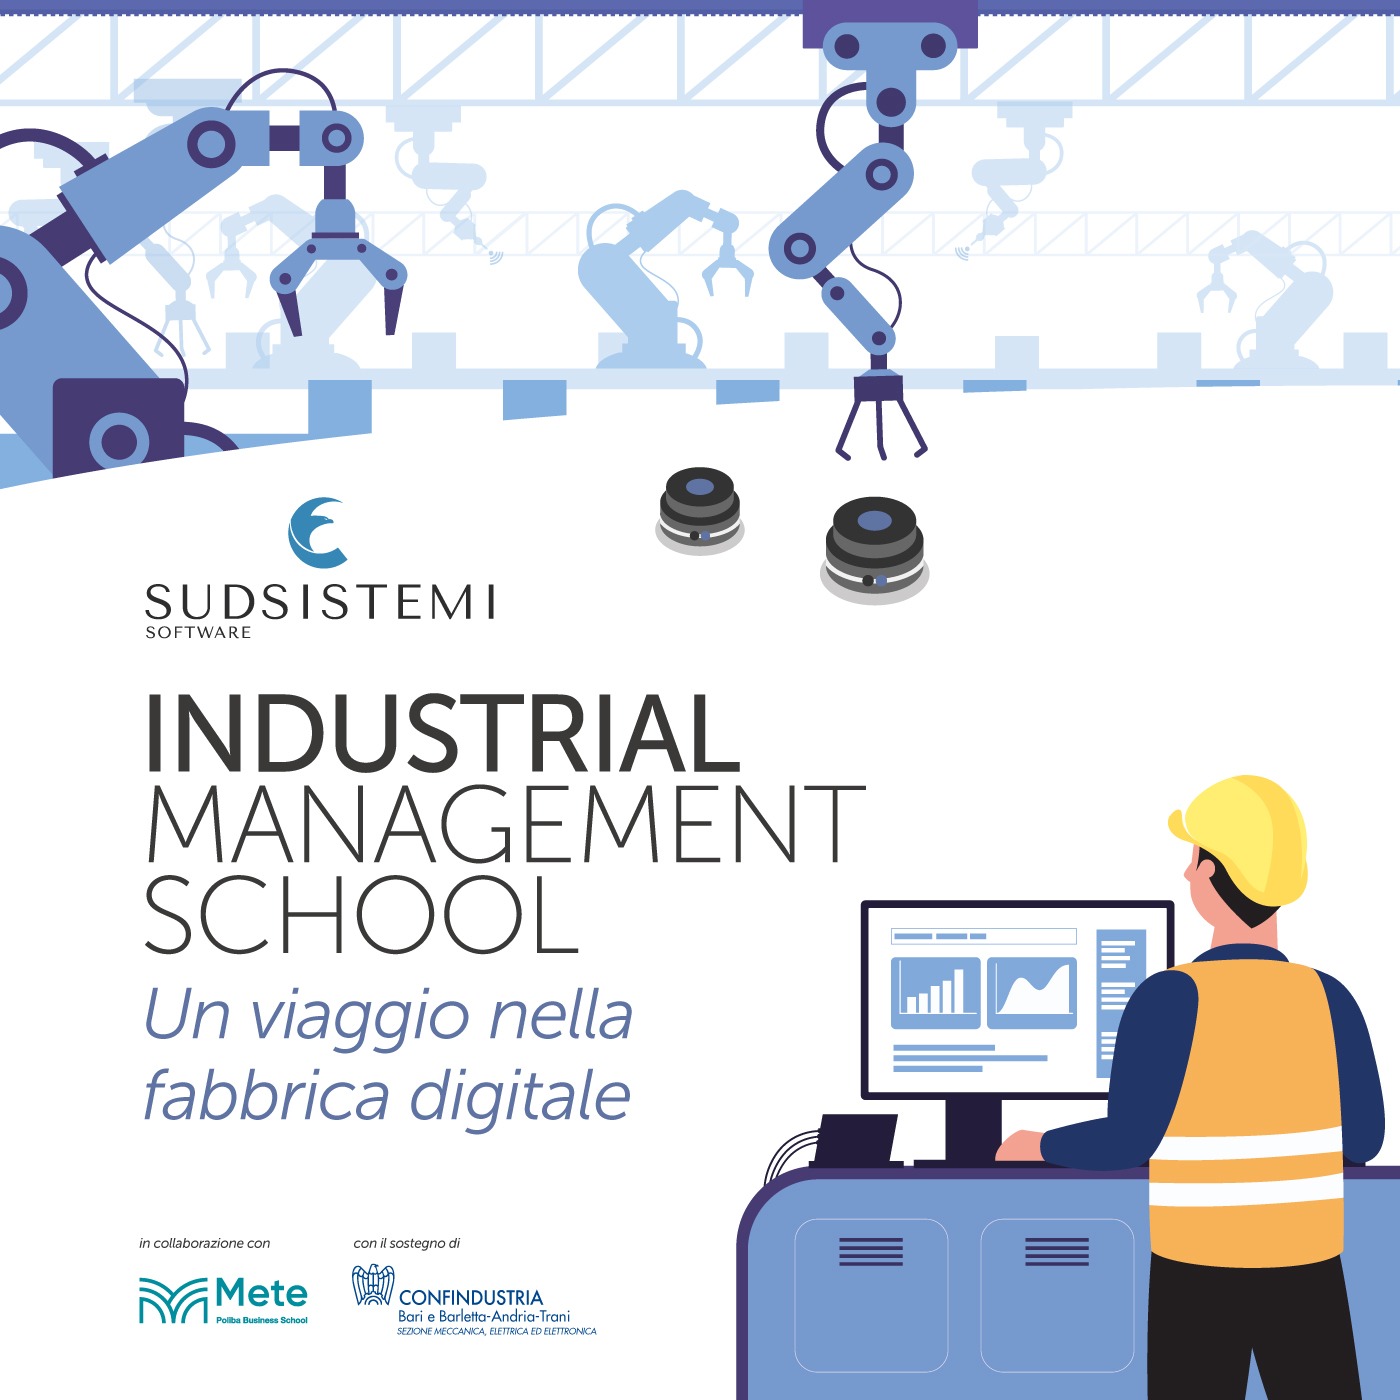 Industrial Management School